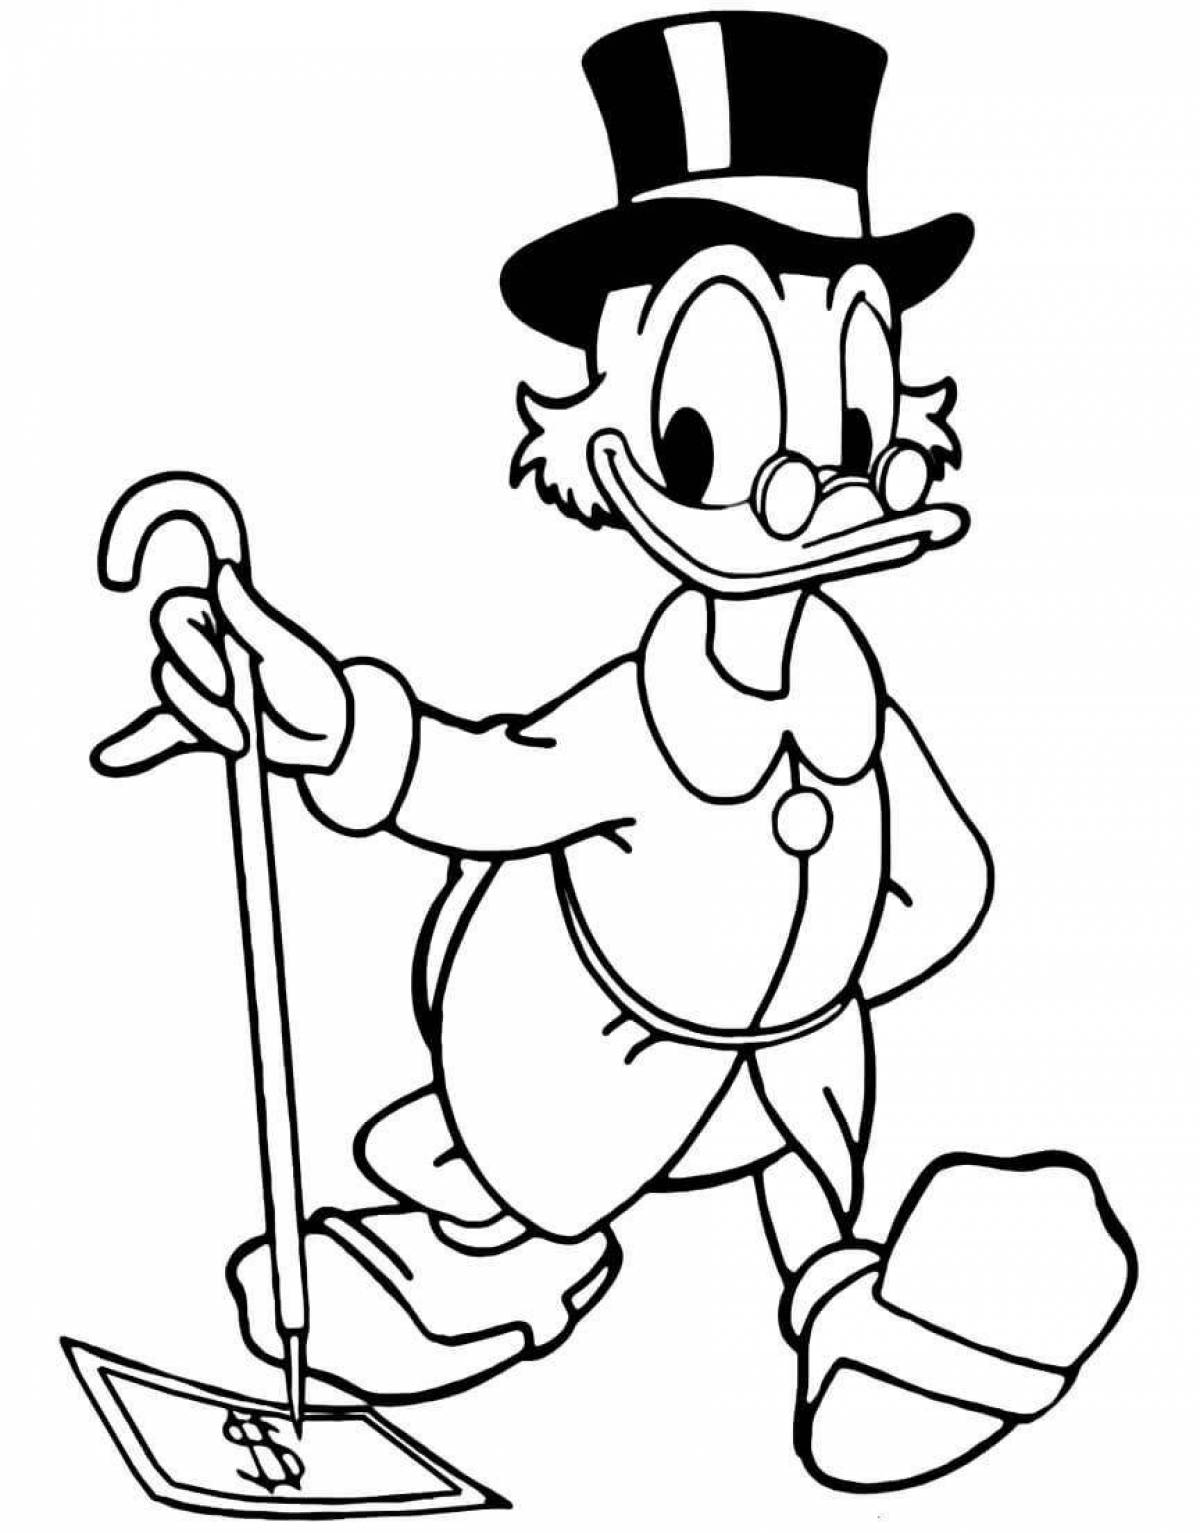 Scrooge McDuck #1